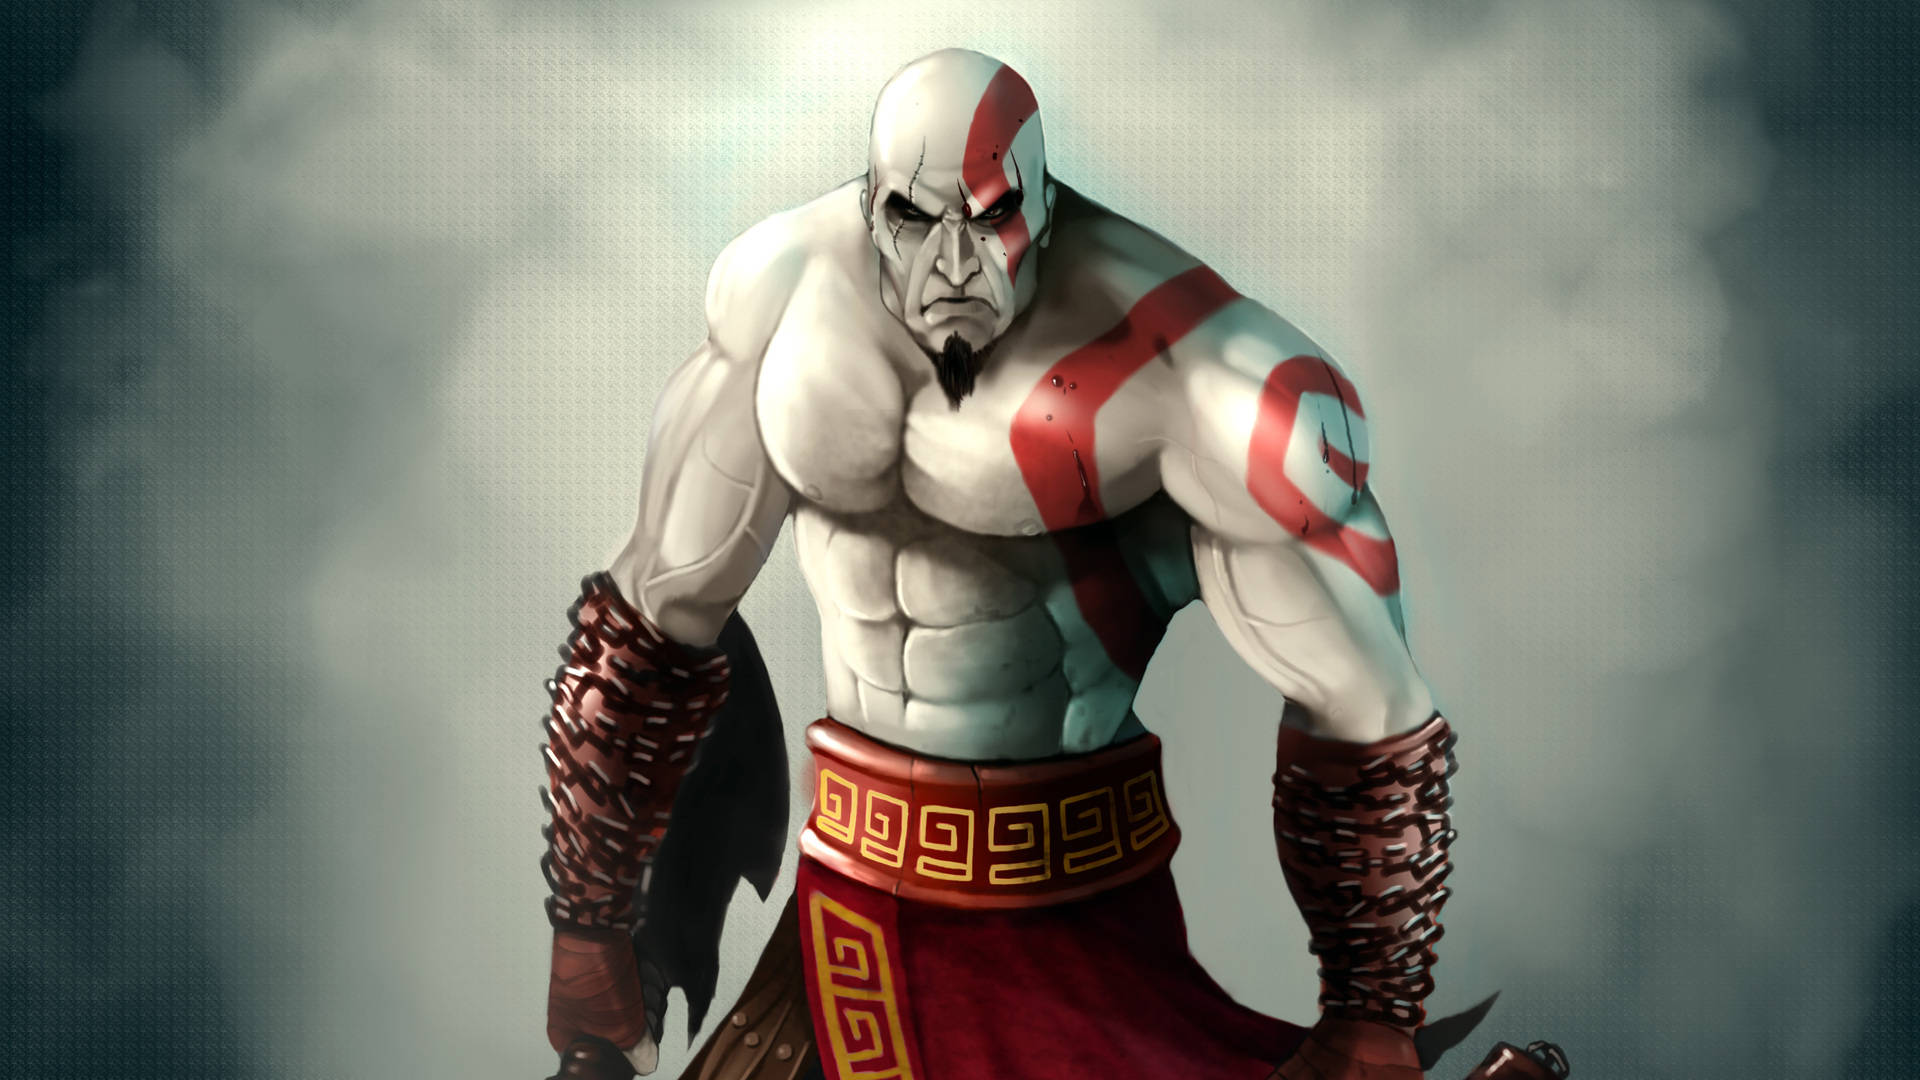 Free Kratos Wallpaper Downloads, [100+] Kratos Wallpapers for FREE |  